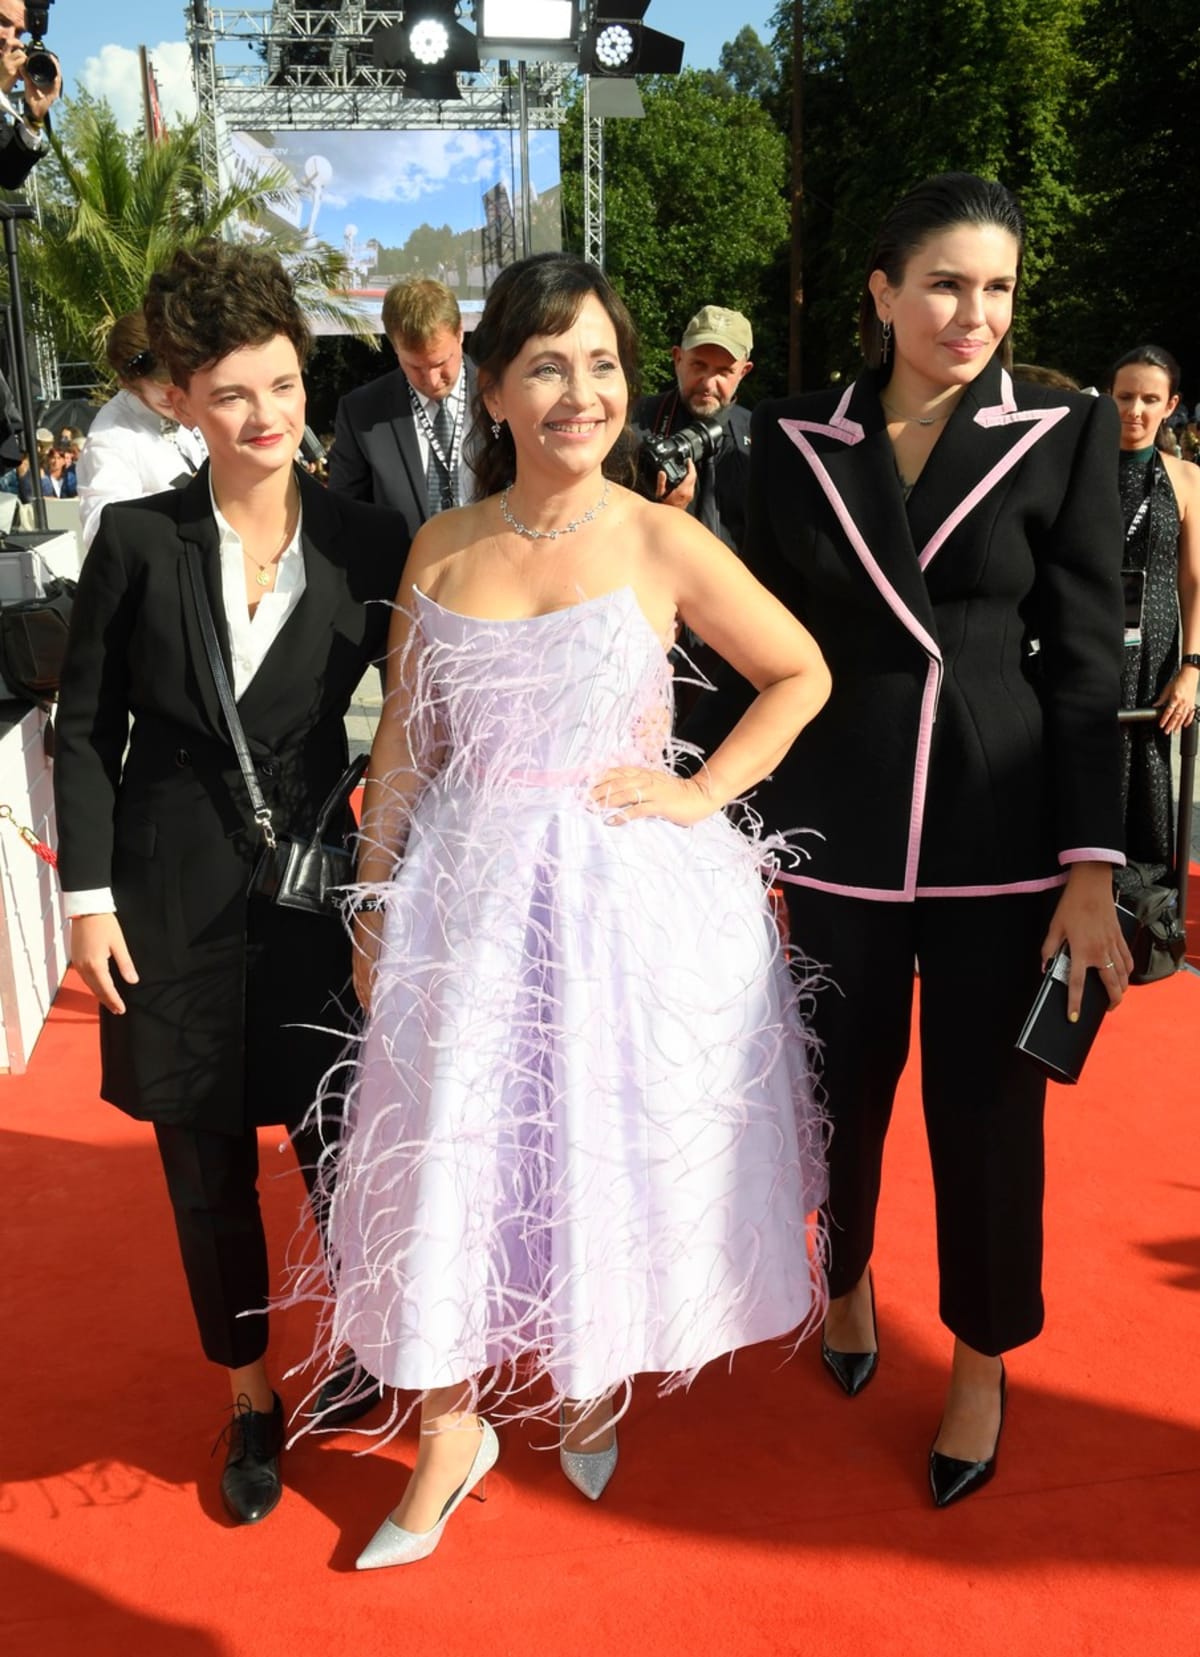 Herečka Alena Mihulová s dcerou a její přítelkyní na Mezinárodním filmovém festivalu Karlovy Vary